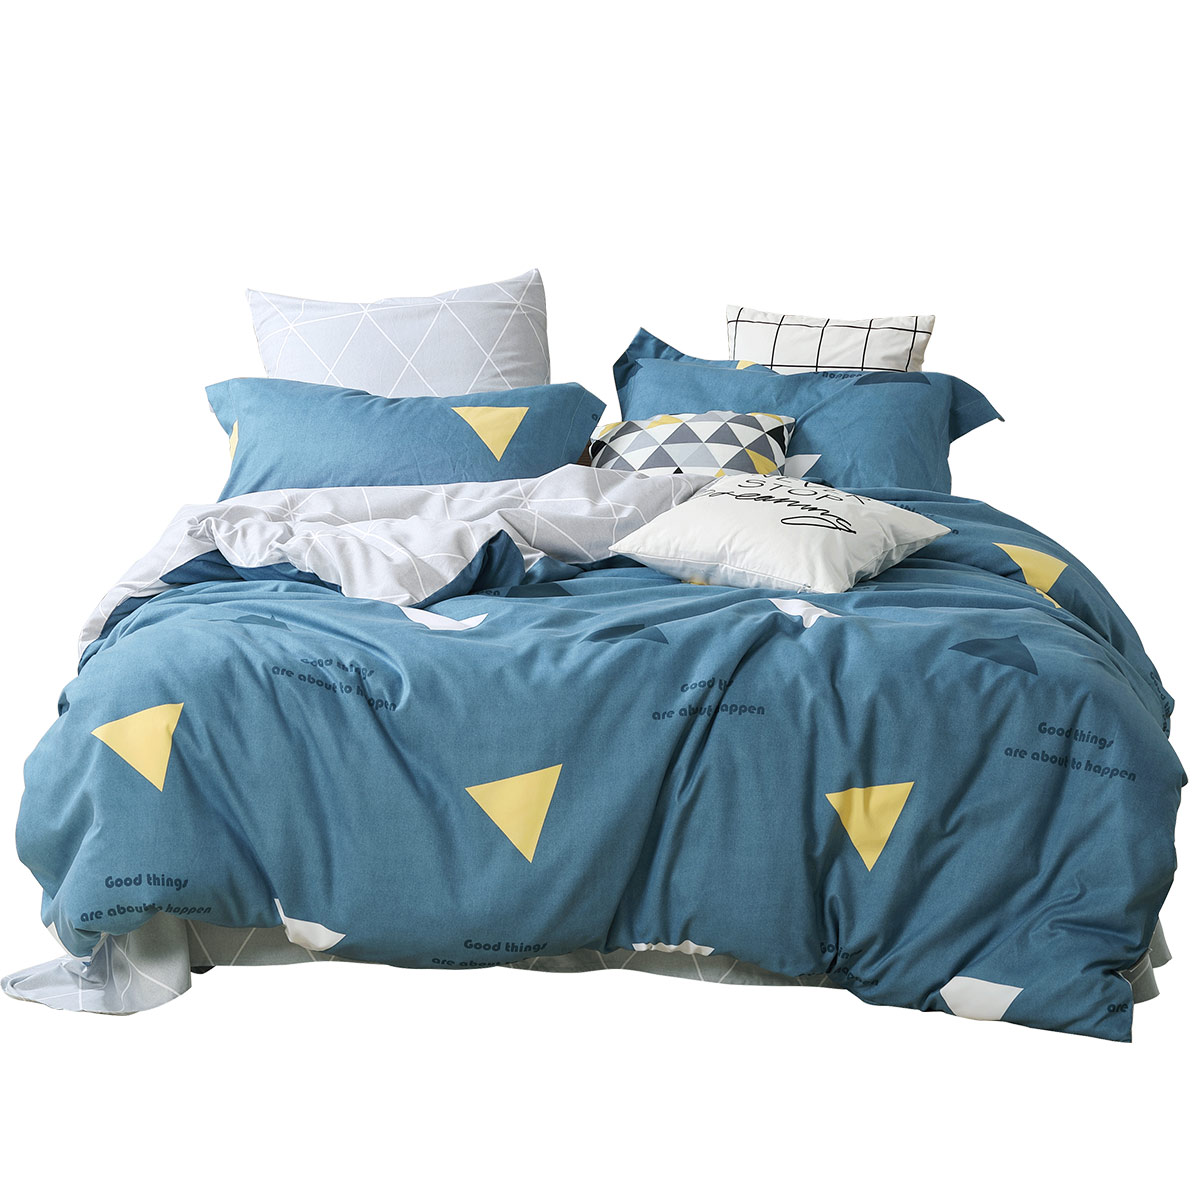 水星家纺 磨毛四件套加厚1.5m/1.8米床单被套床上用品微蓝 多花型